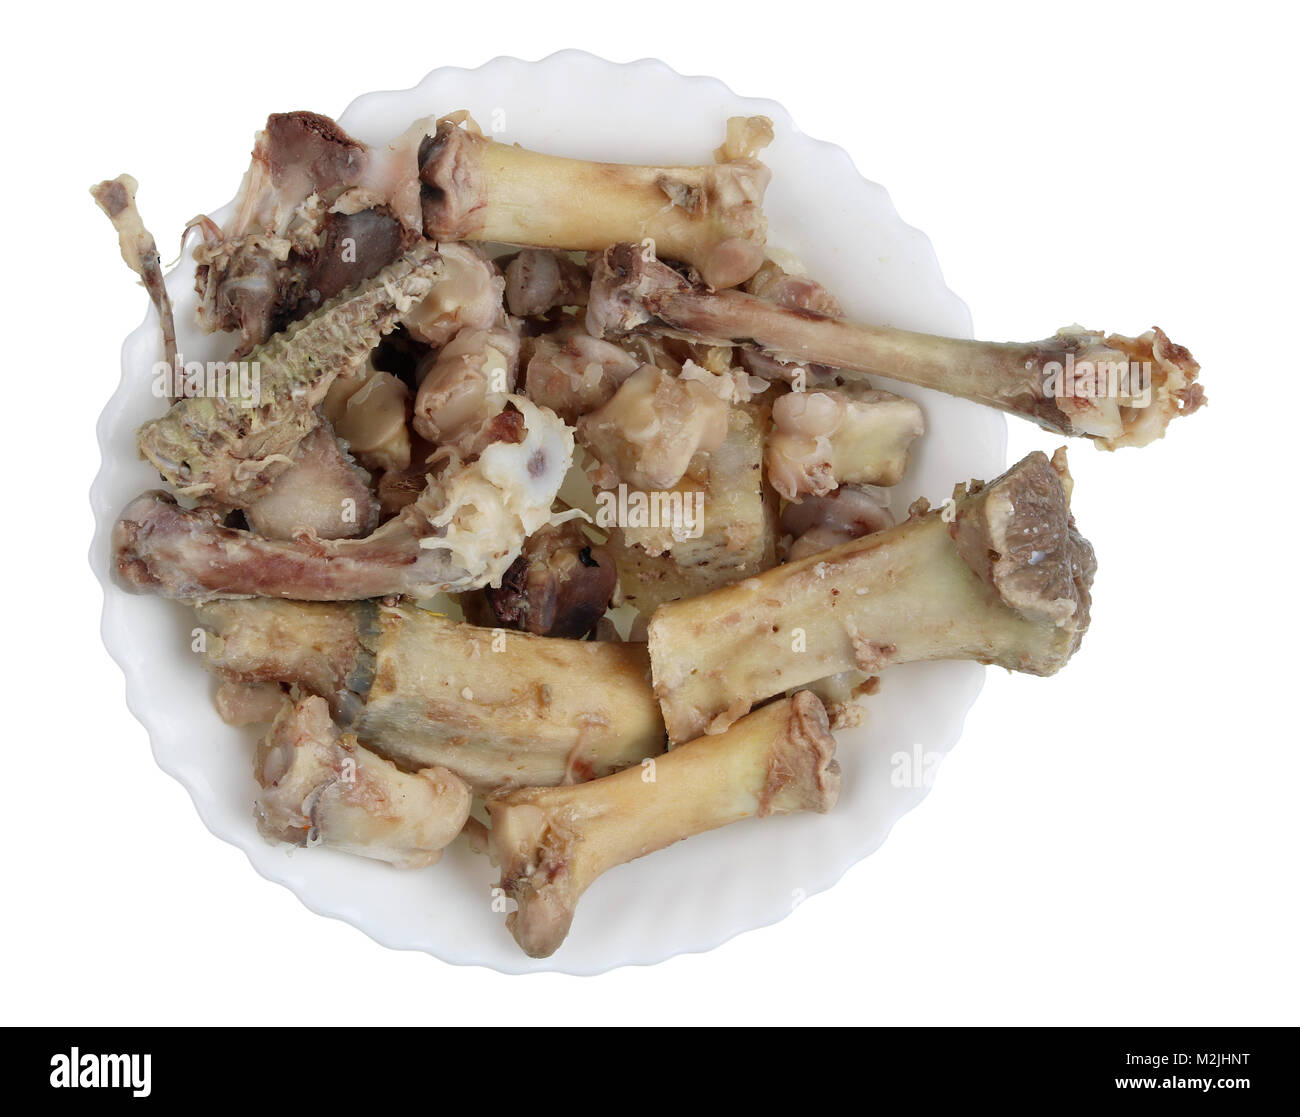 Gekochtes Rindfleisch und Schweinefleisch Knochen mit Fleisch - das ist die  beste Ernährung für den Hund. Auf weiß Top View Studio shot Isoliert  Stockfotografie - Alamy